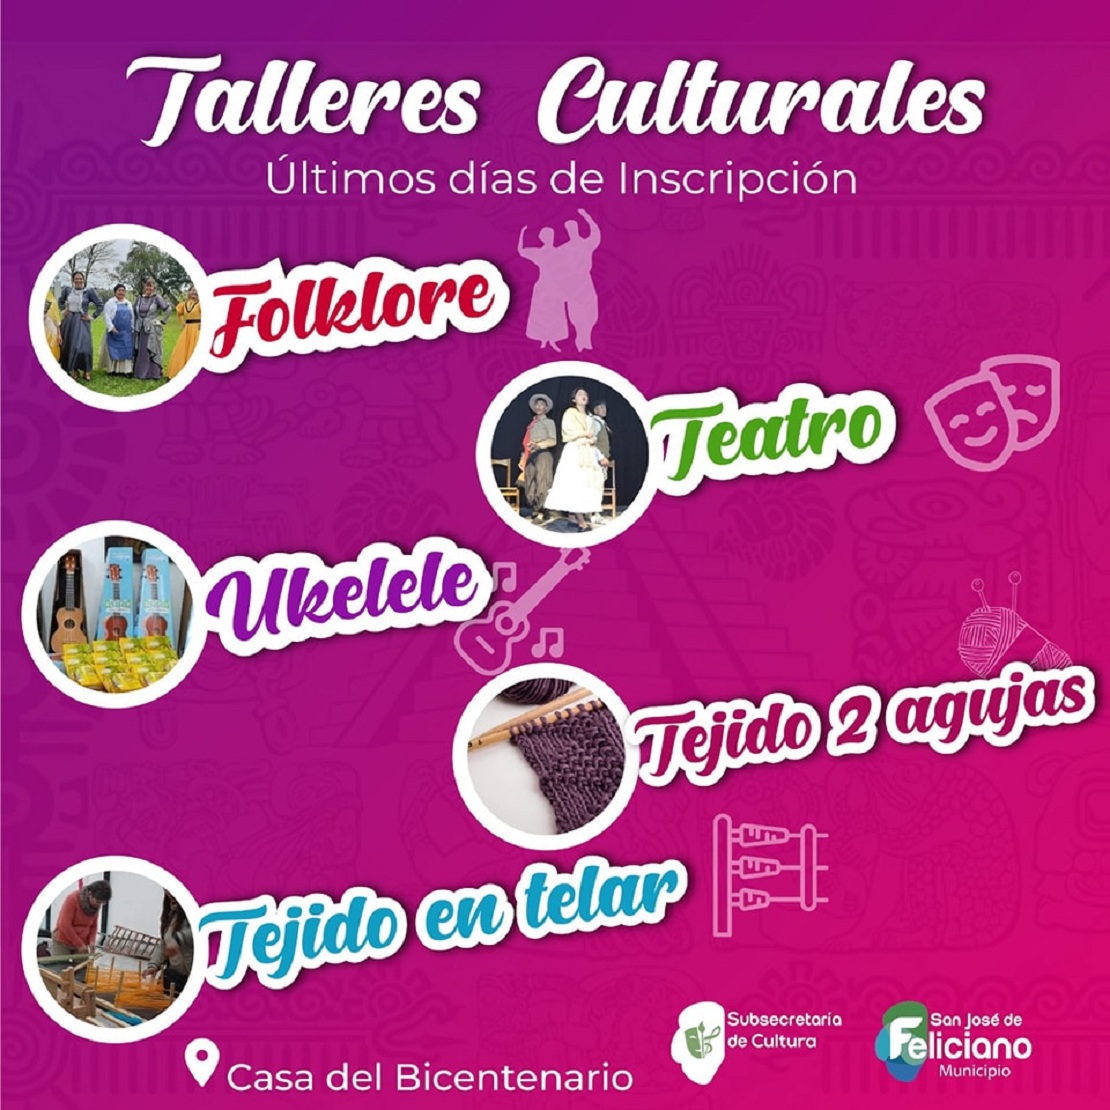 Talleres Culturales.-